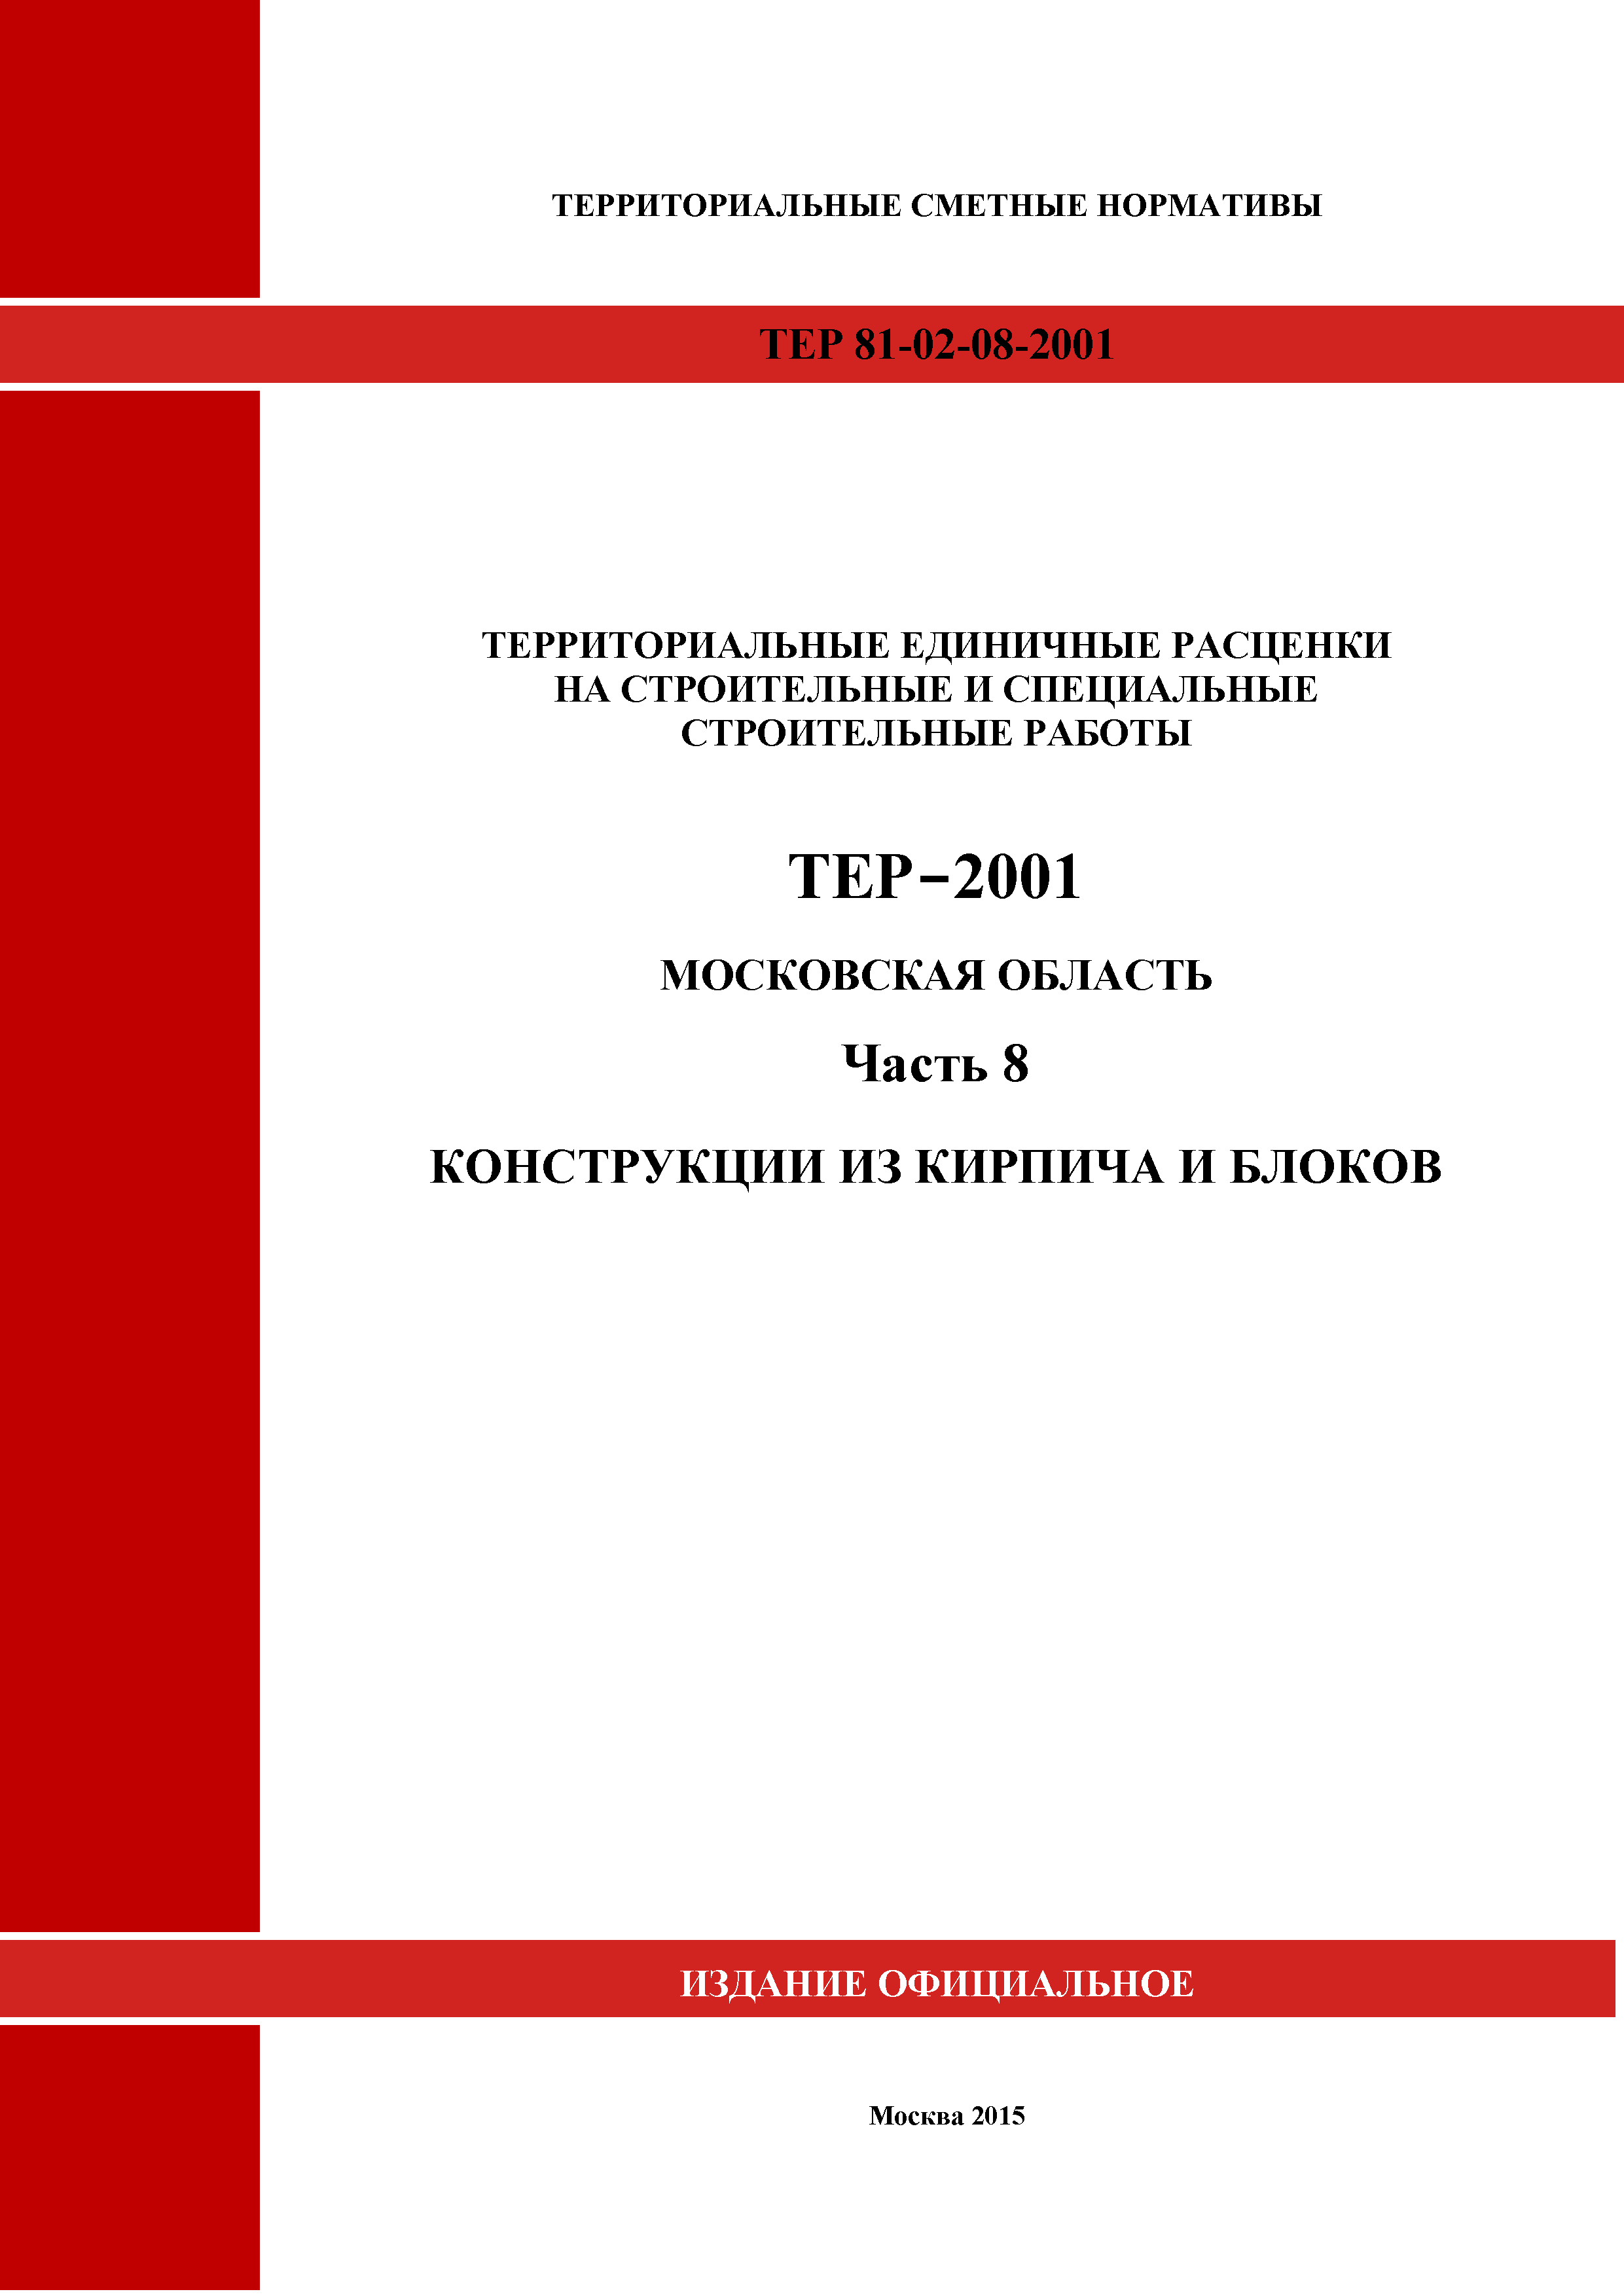 ТЕР 8-2001 Московской области